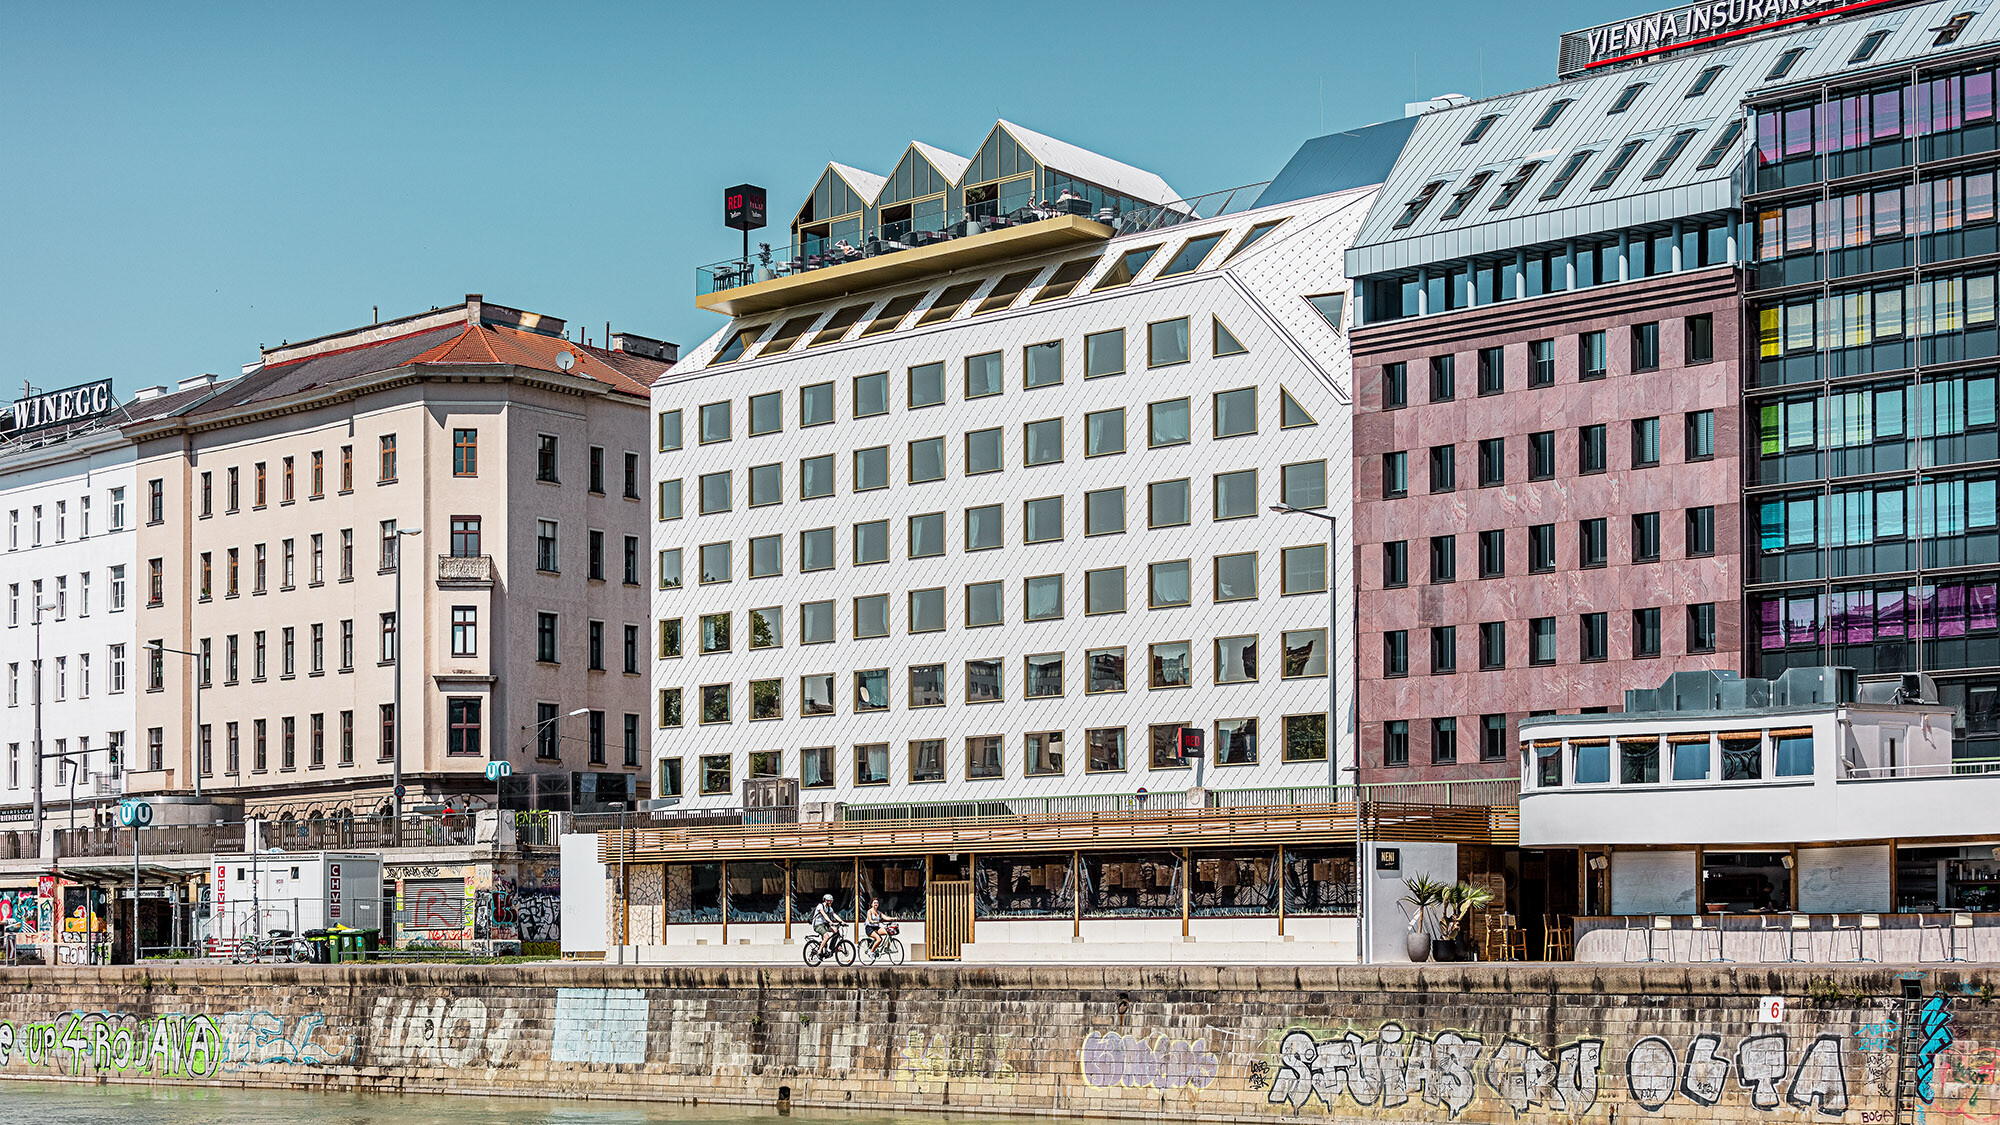 L'hôtel vu de côté et son environnement bâti, le canal du Danube s'étendant juste devant lui.